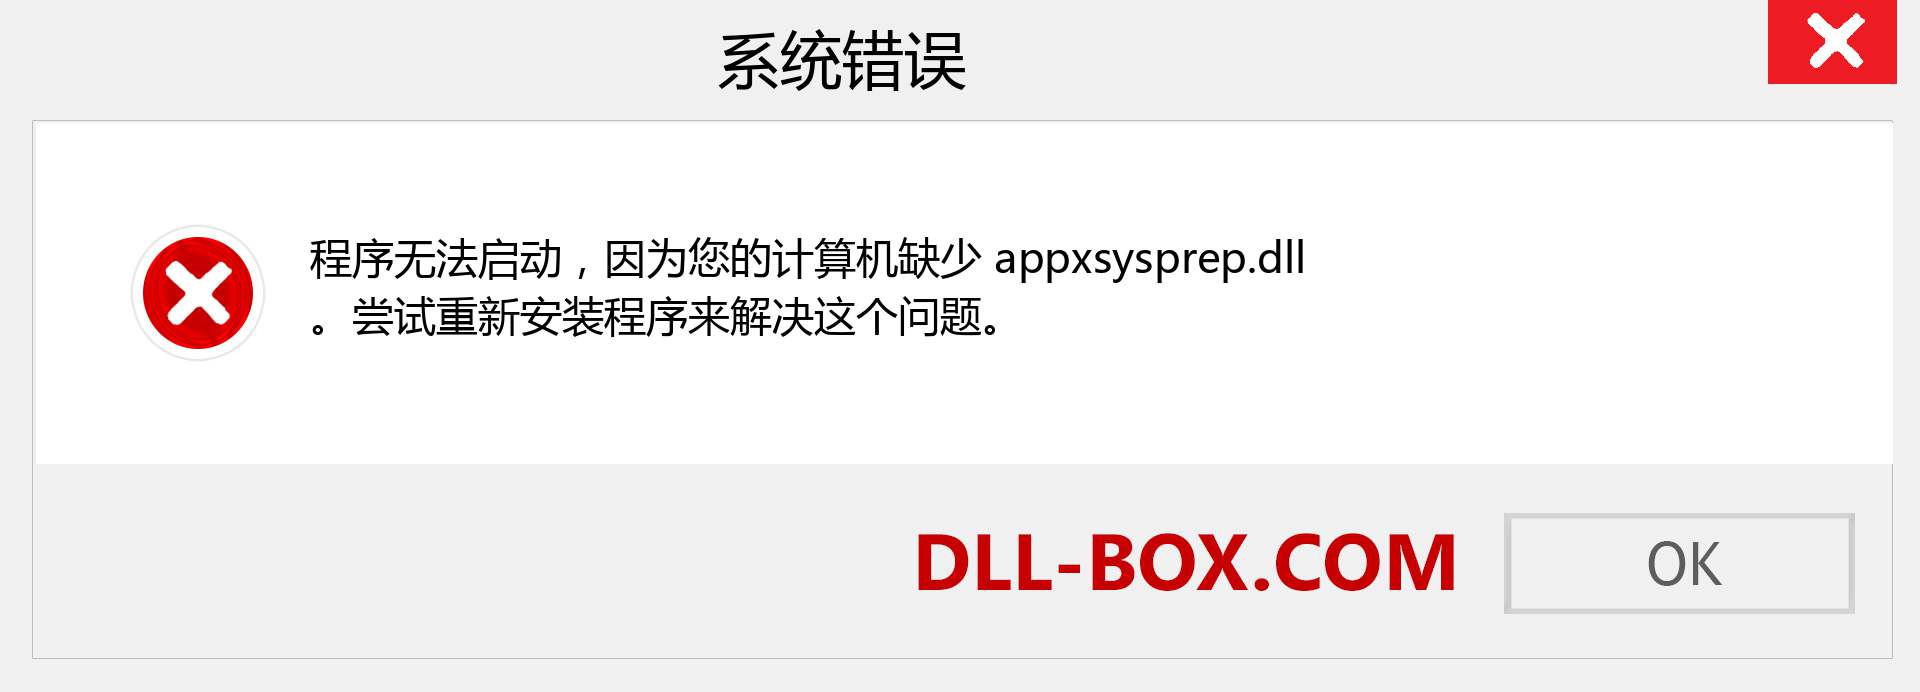 appxsysprep.dll 文件丢失？。 适用于 Windows 7、8、10 的下载 - 修复 Windows、照片、图像上的 appxsysprep dll 丢失错误